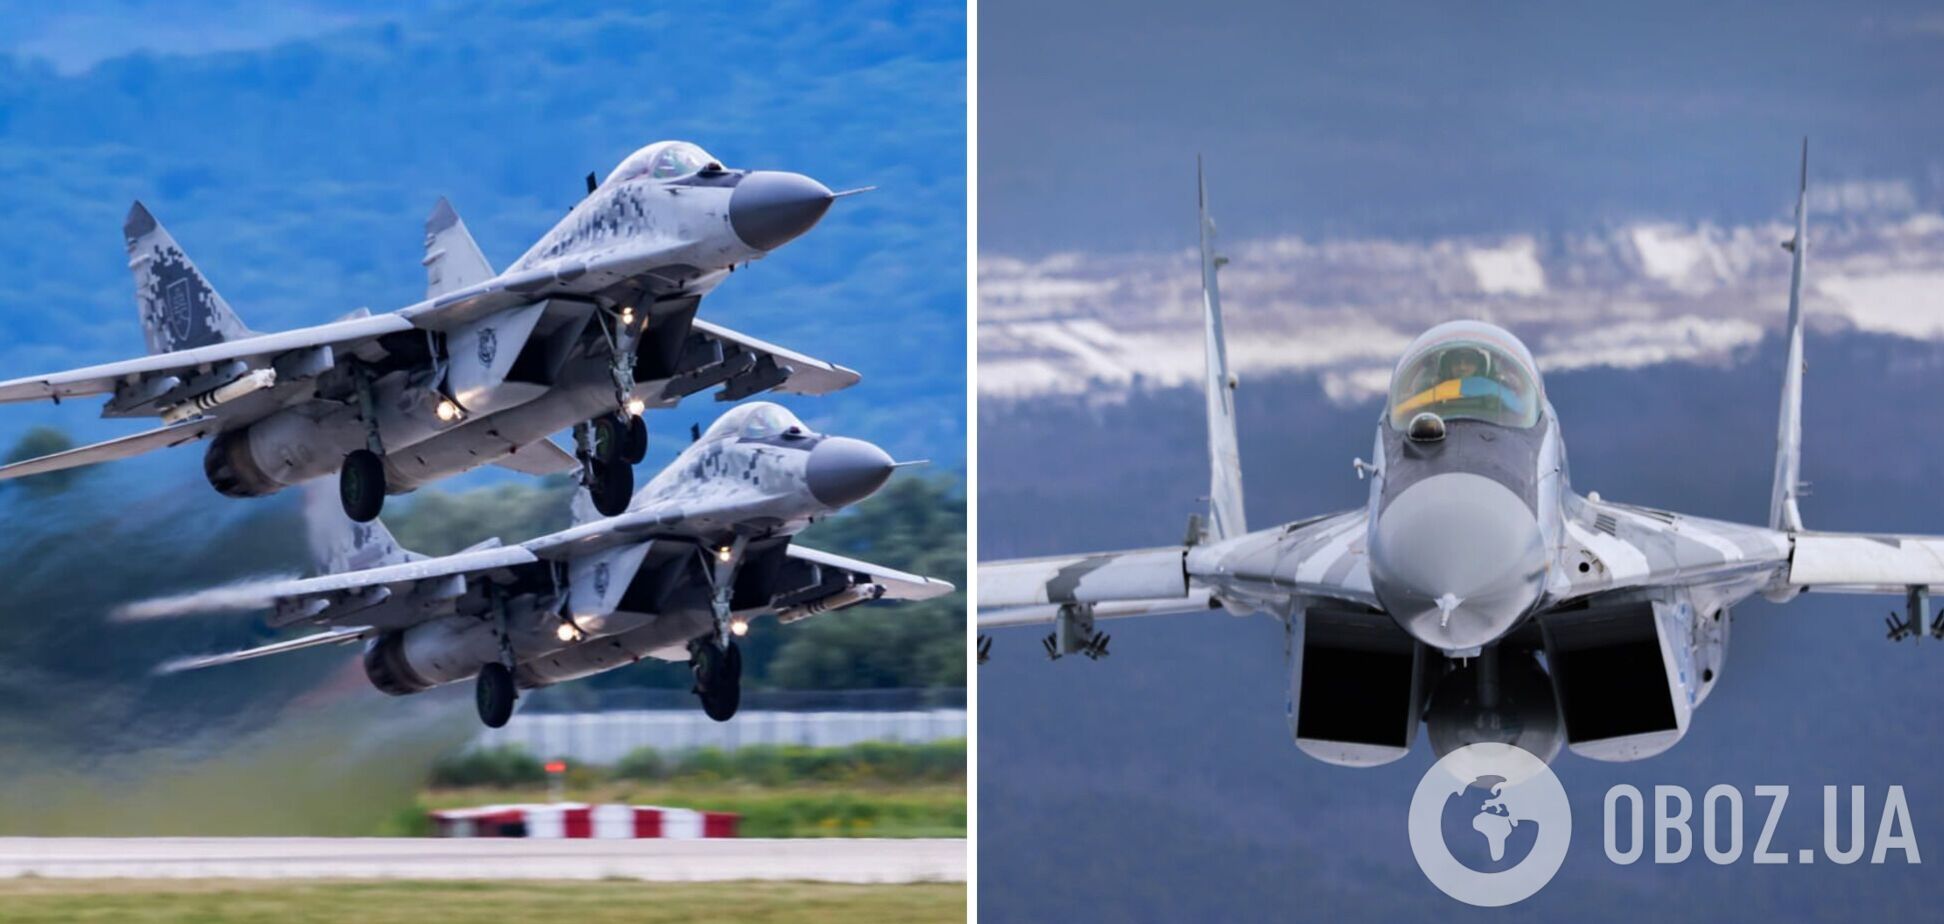 В Польше заявили, что Украина может получить МиГ-29 от нескольких стран: есть четкие сигналы